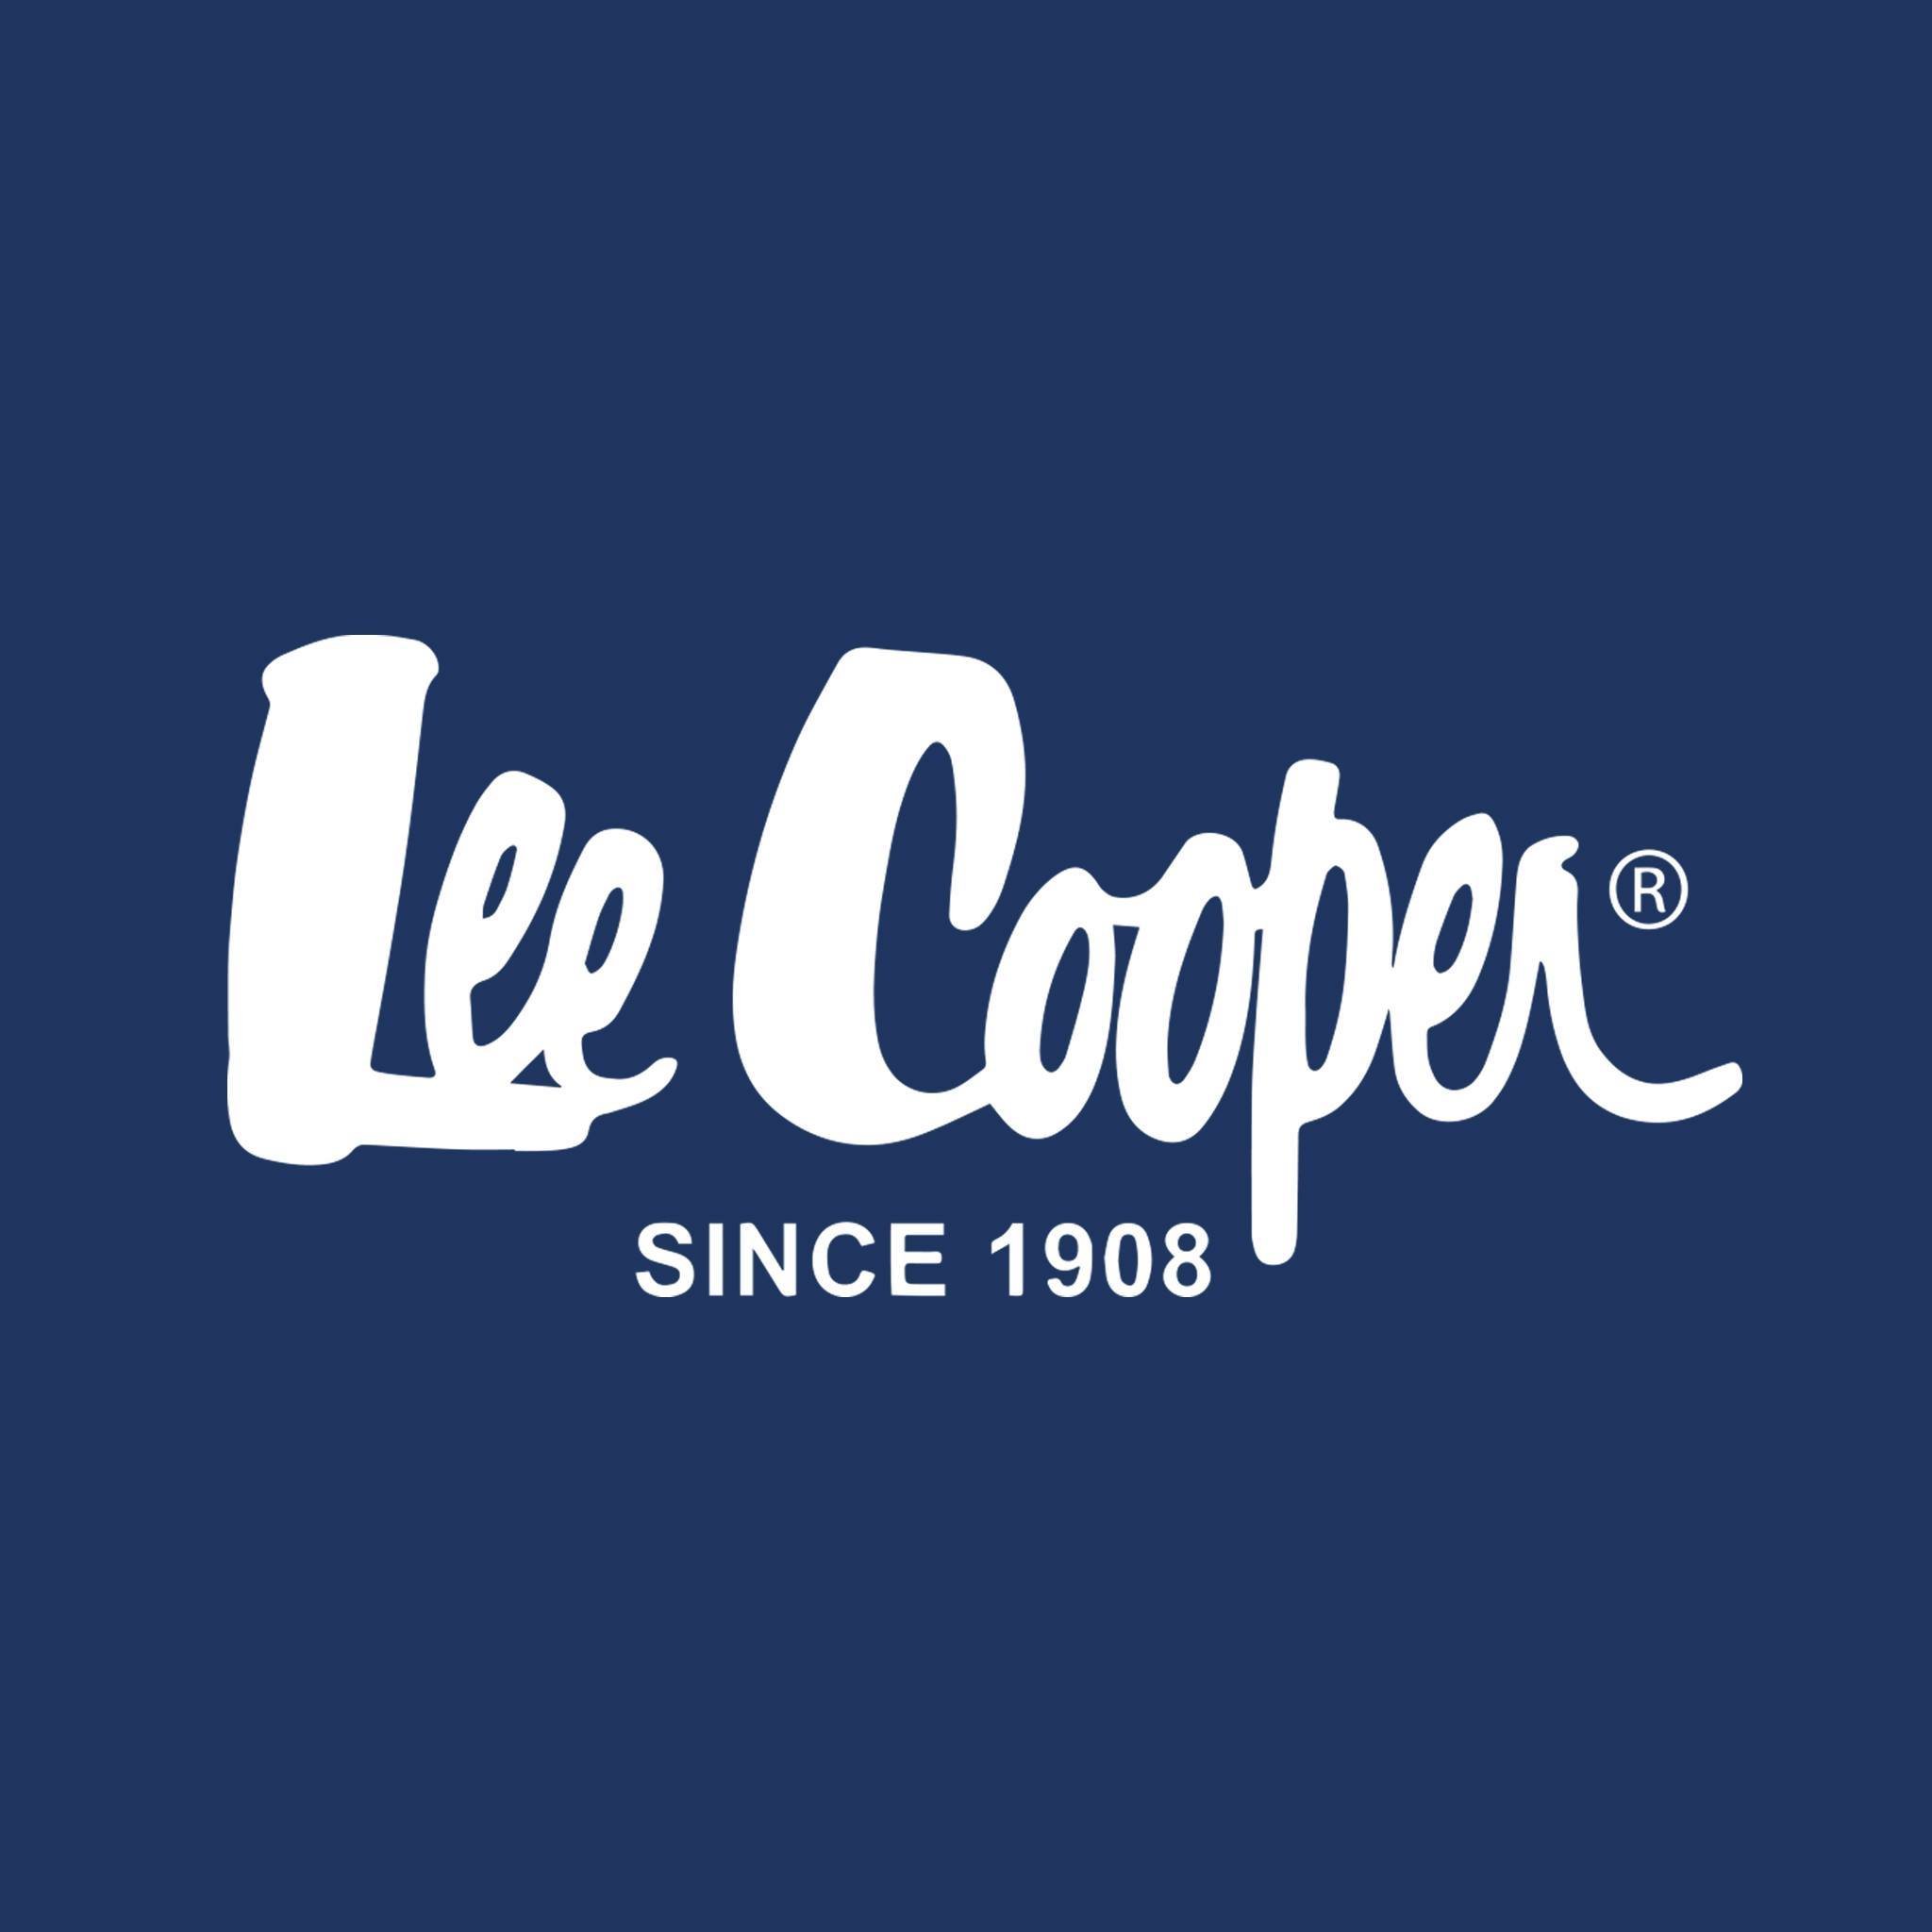 Lee Cooper Розмірні таблиці